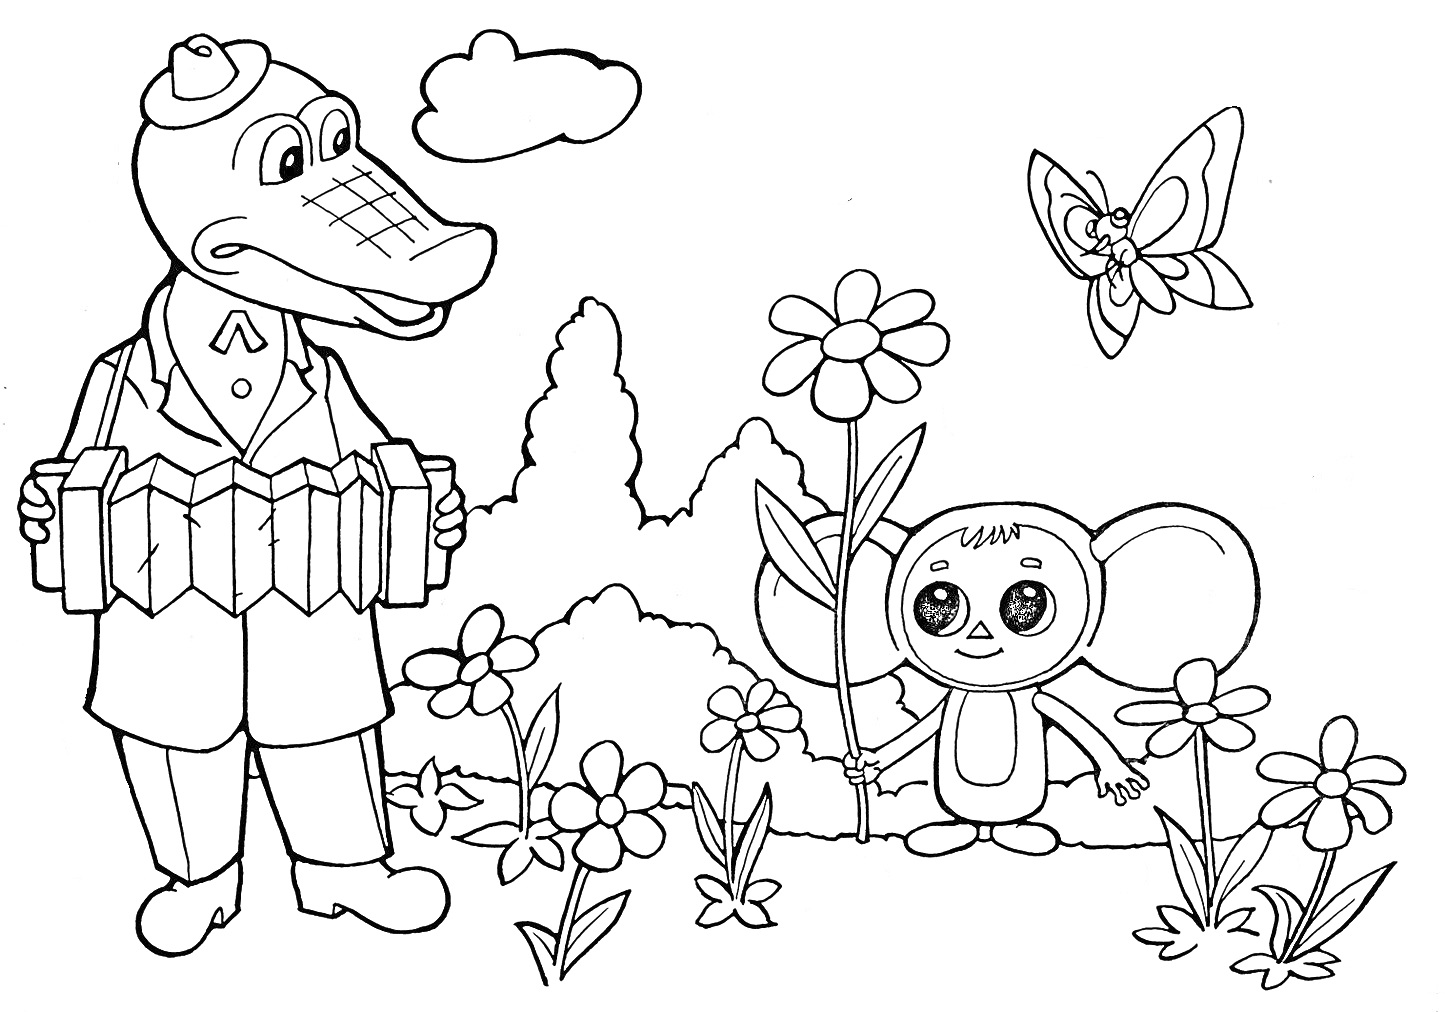 Раскраска Чебурашка и крокодил Гена на поляне с цветами и бабочкой